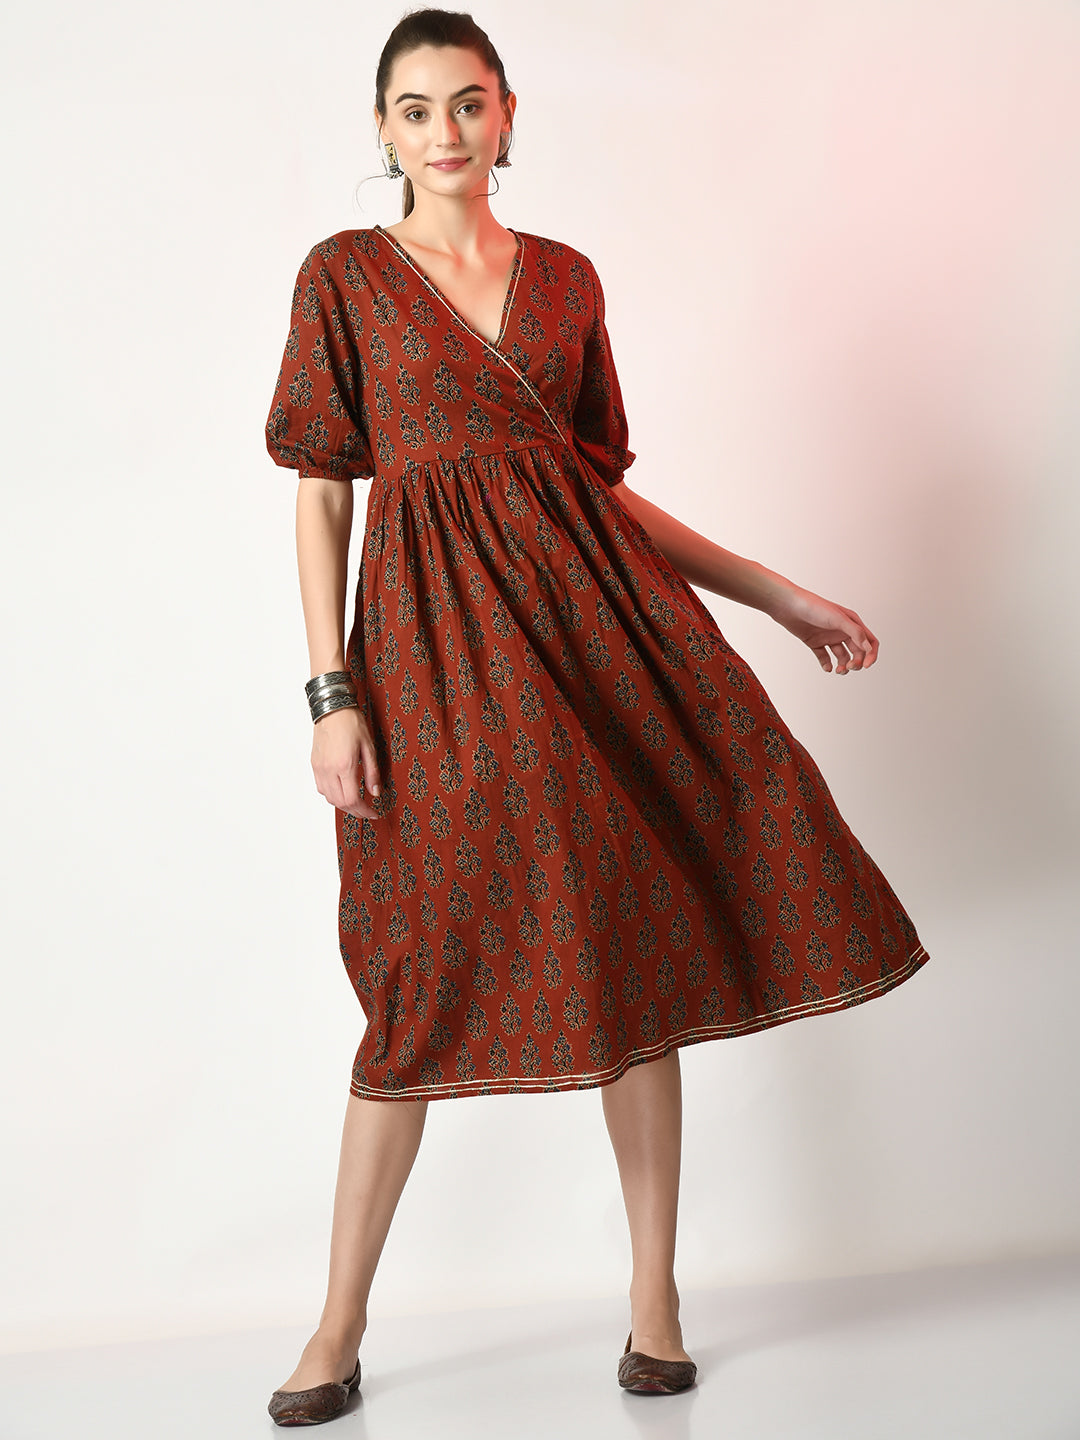 Women's Rust Empire Printed Dress - Myshka